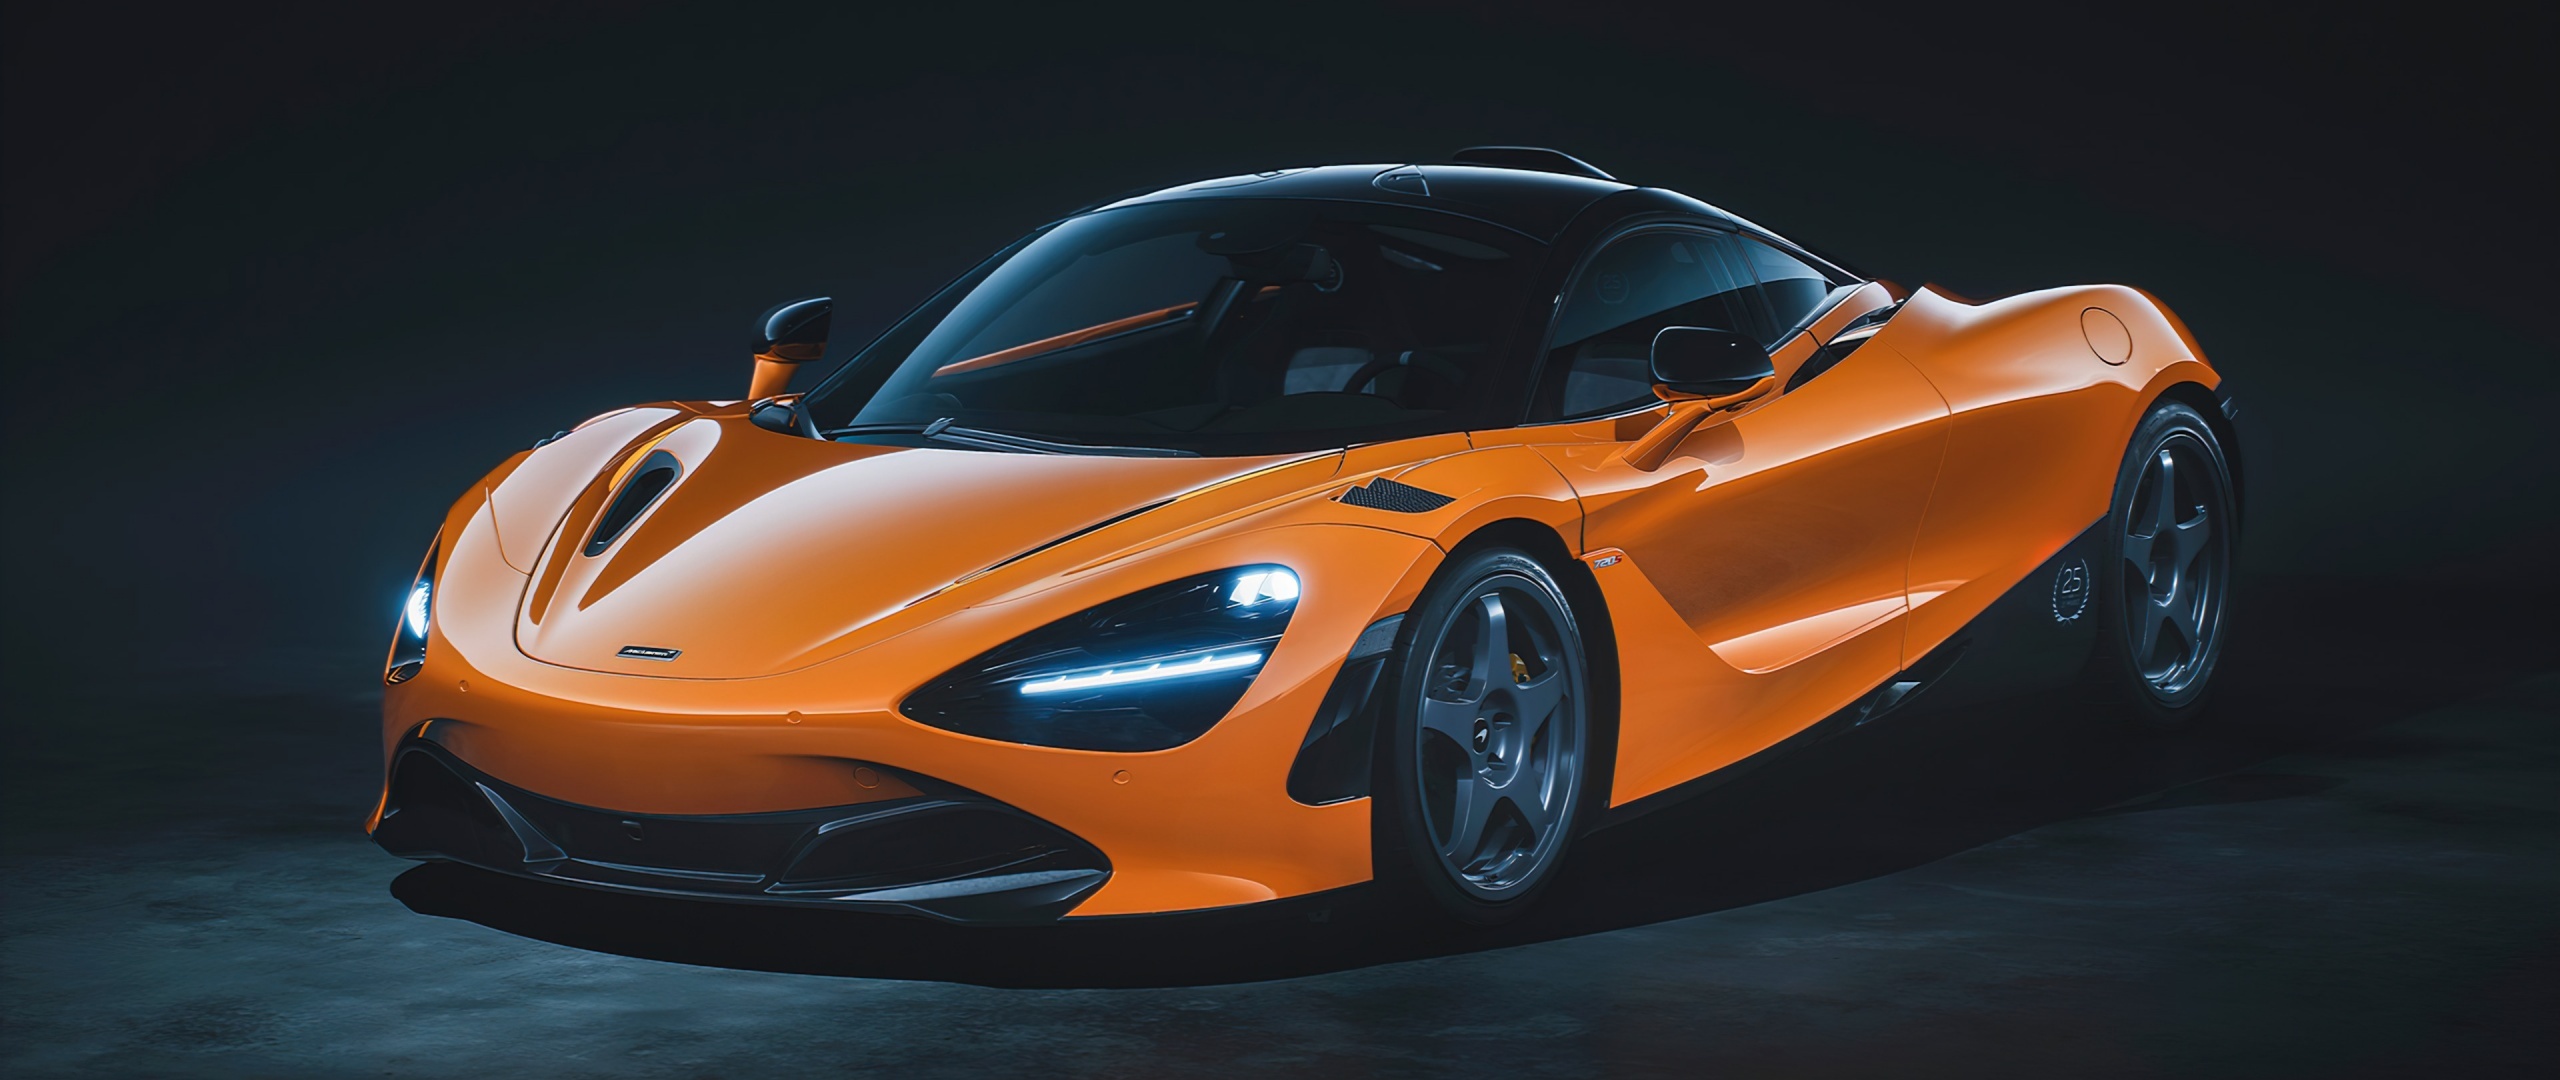 McLaren 720S, Speed demon, Cutting-edge technology, Sleek and powerful, 2560x1080 Dual Screen Desktop